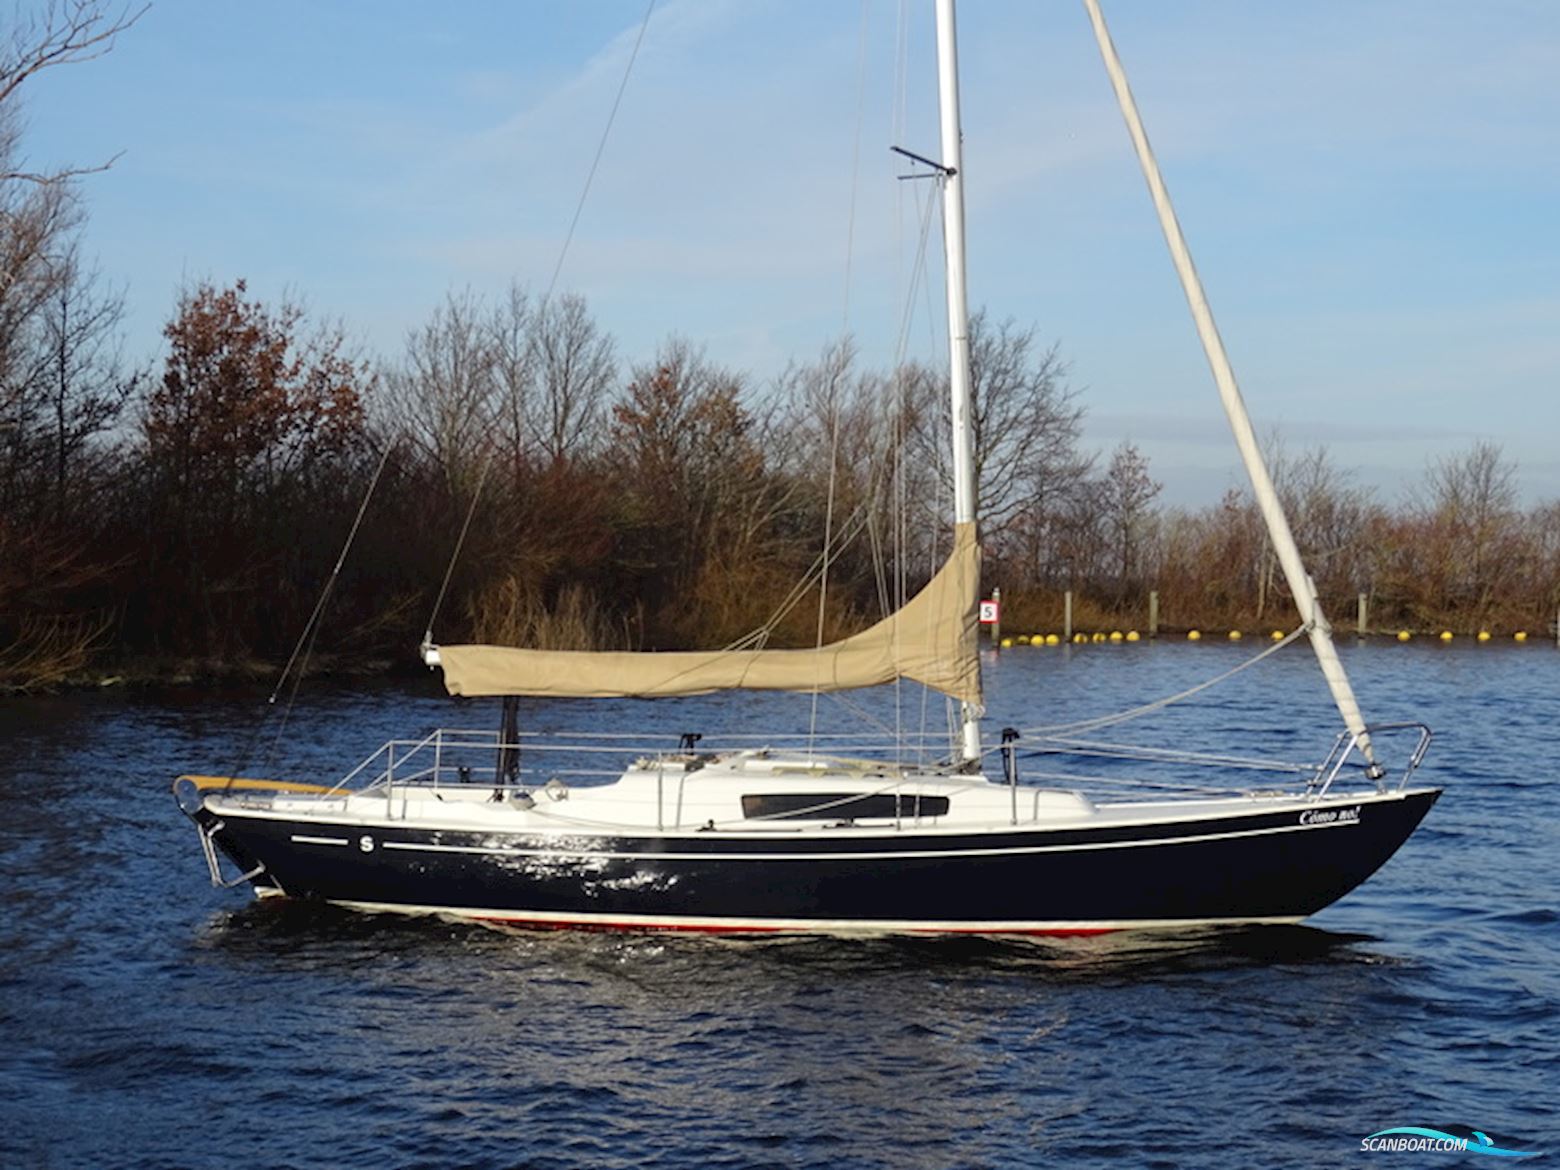 Seacamper IF (Marieholm) Segelbåt 2019, med Nani 2.10 motor, Holland